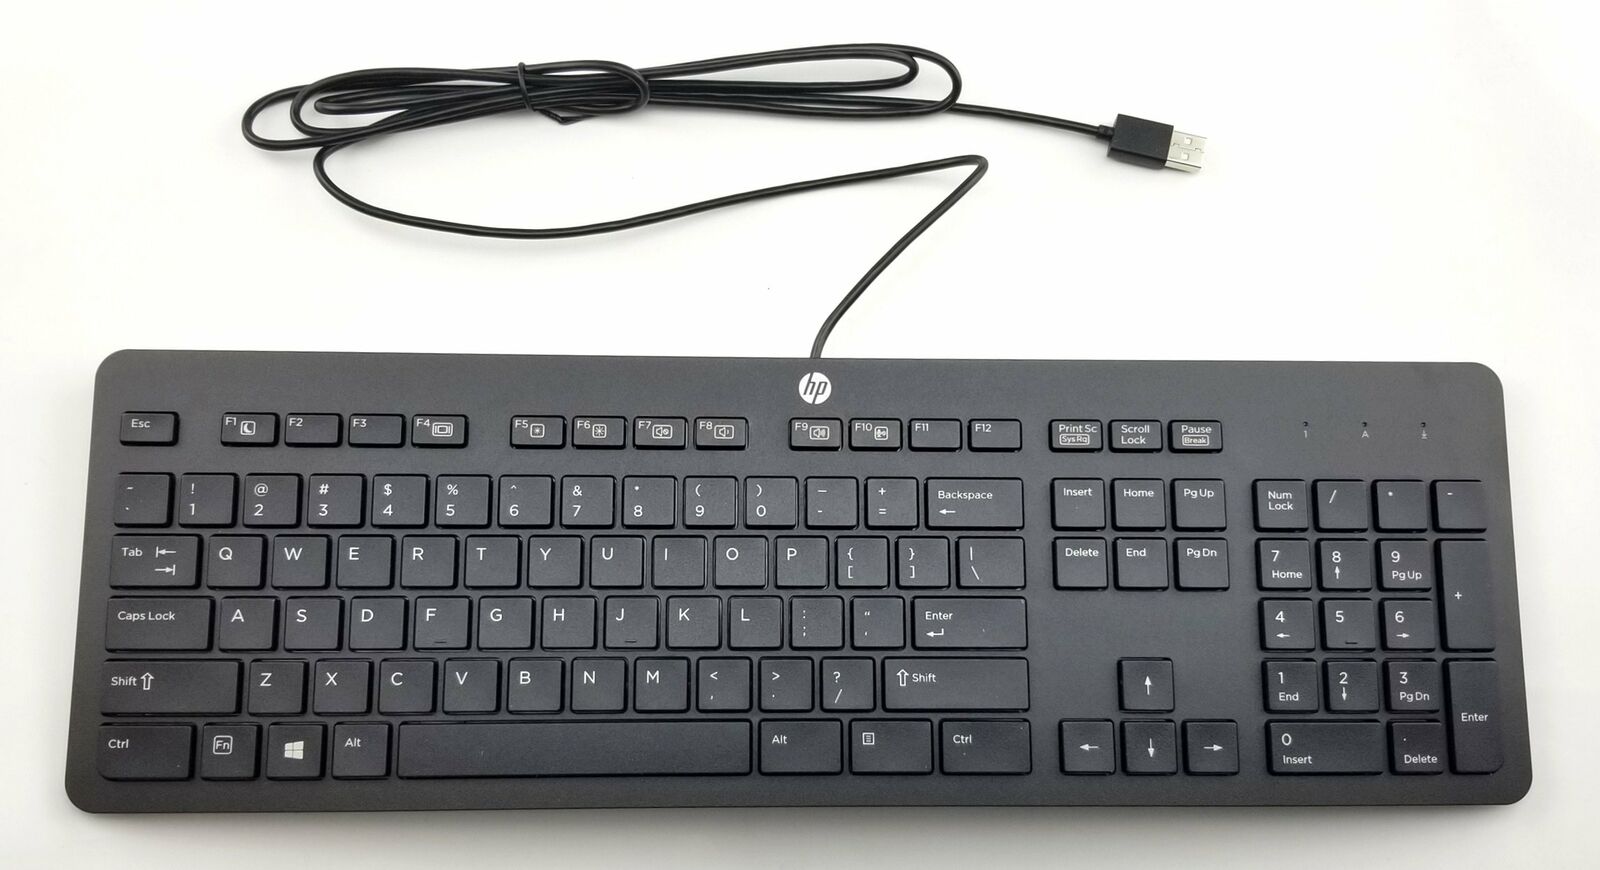 HP kbar211 Keyboard Slim Business Keyboard